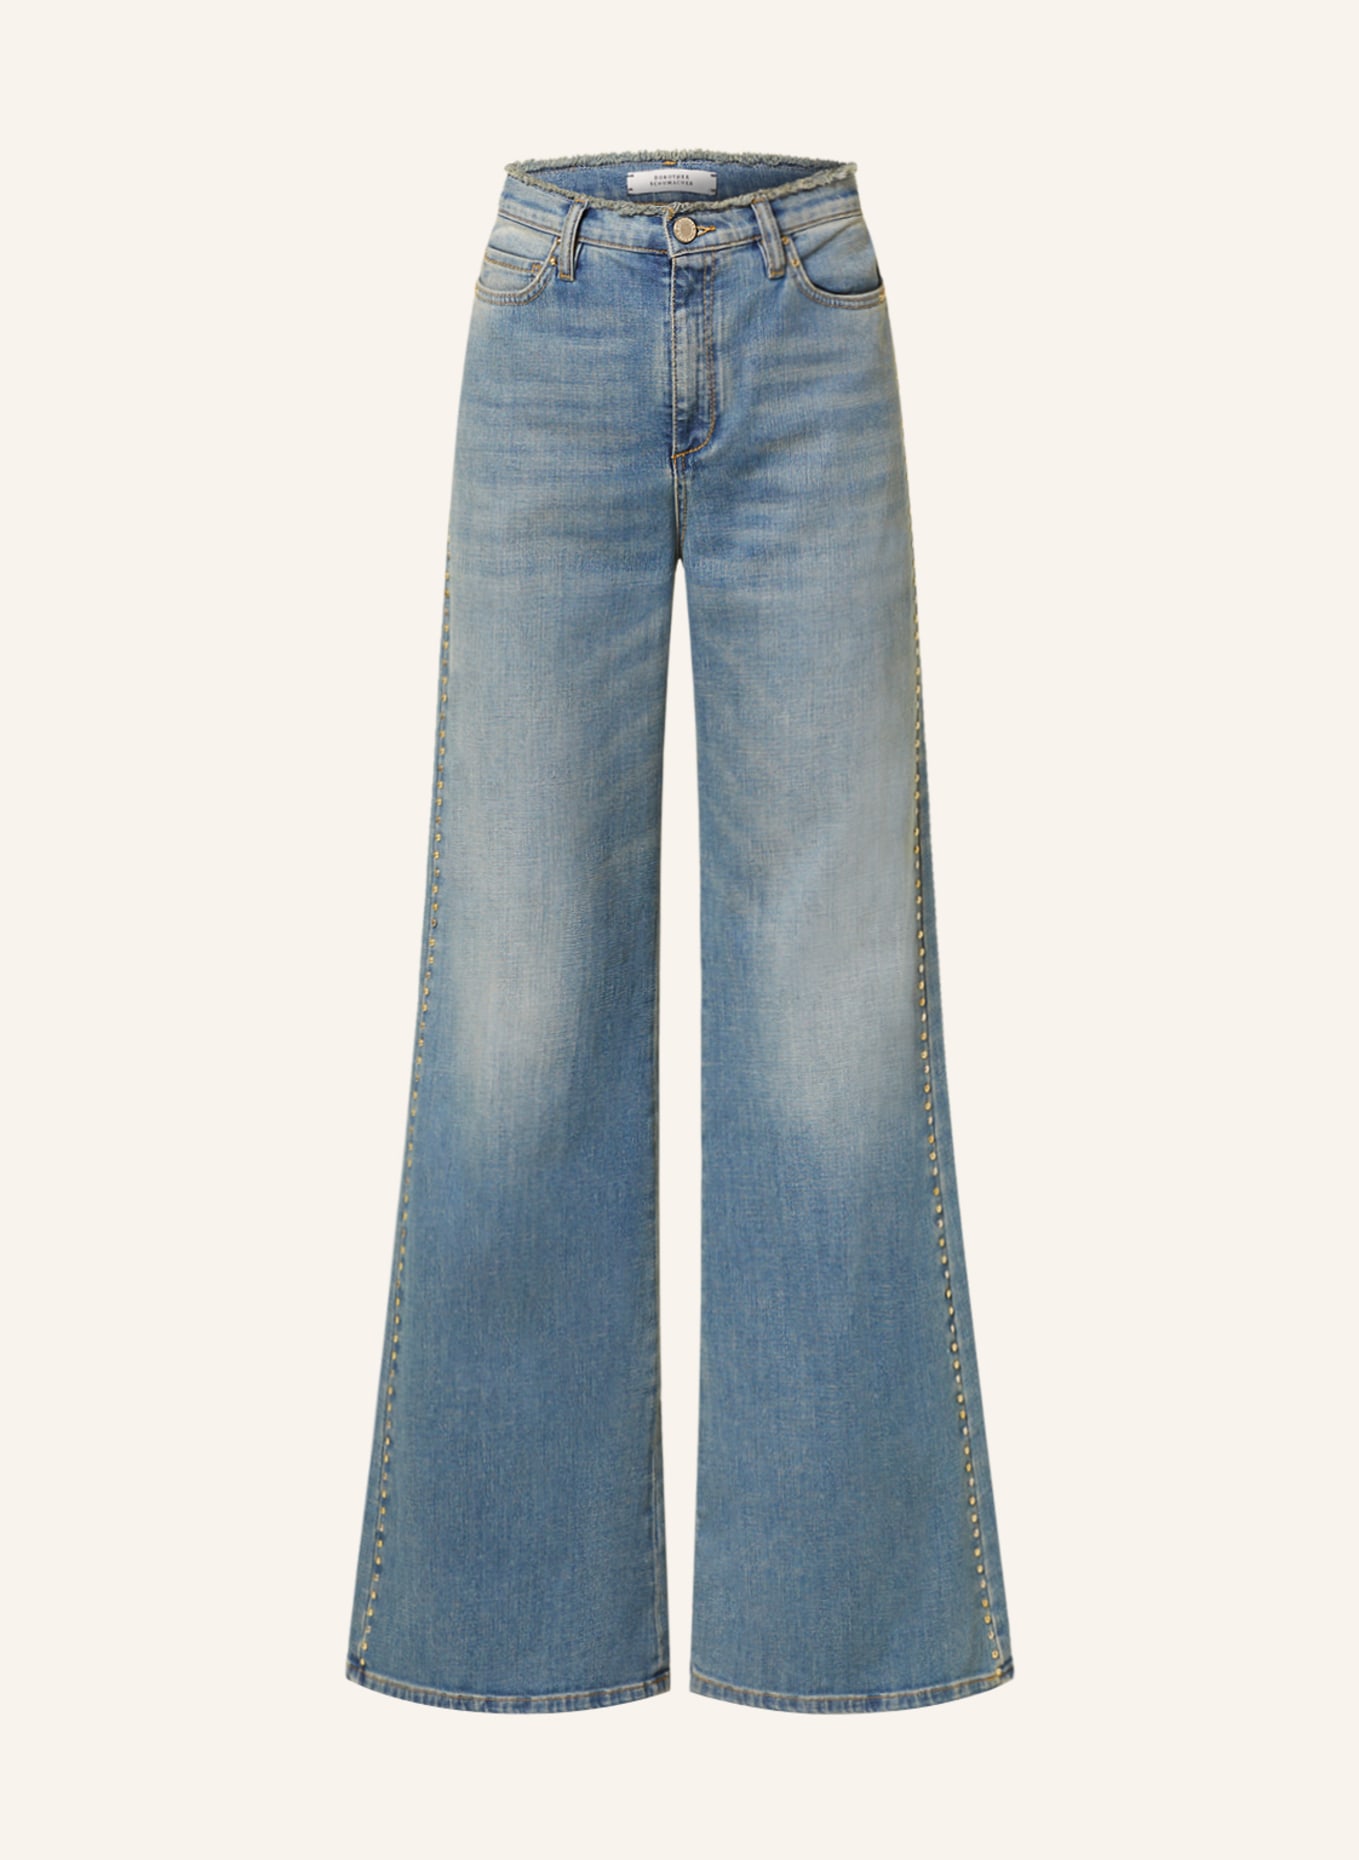 DOROTHEE SCHUMACHER Flared Jeans mit Nieten, Farbe: 854 DARK DENIM (Bild 1)